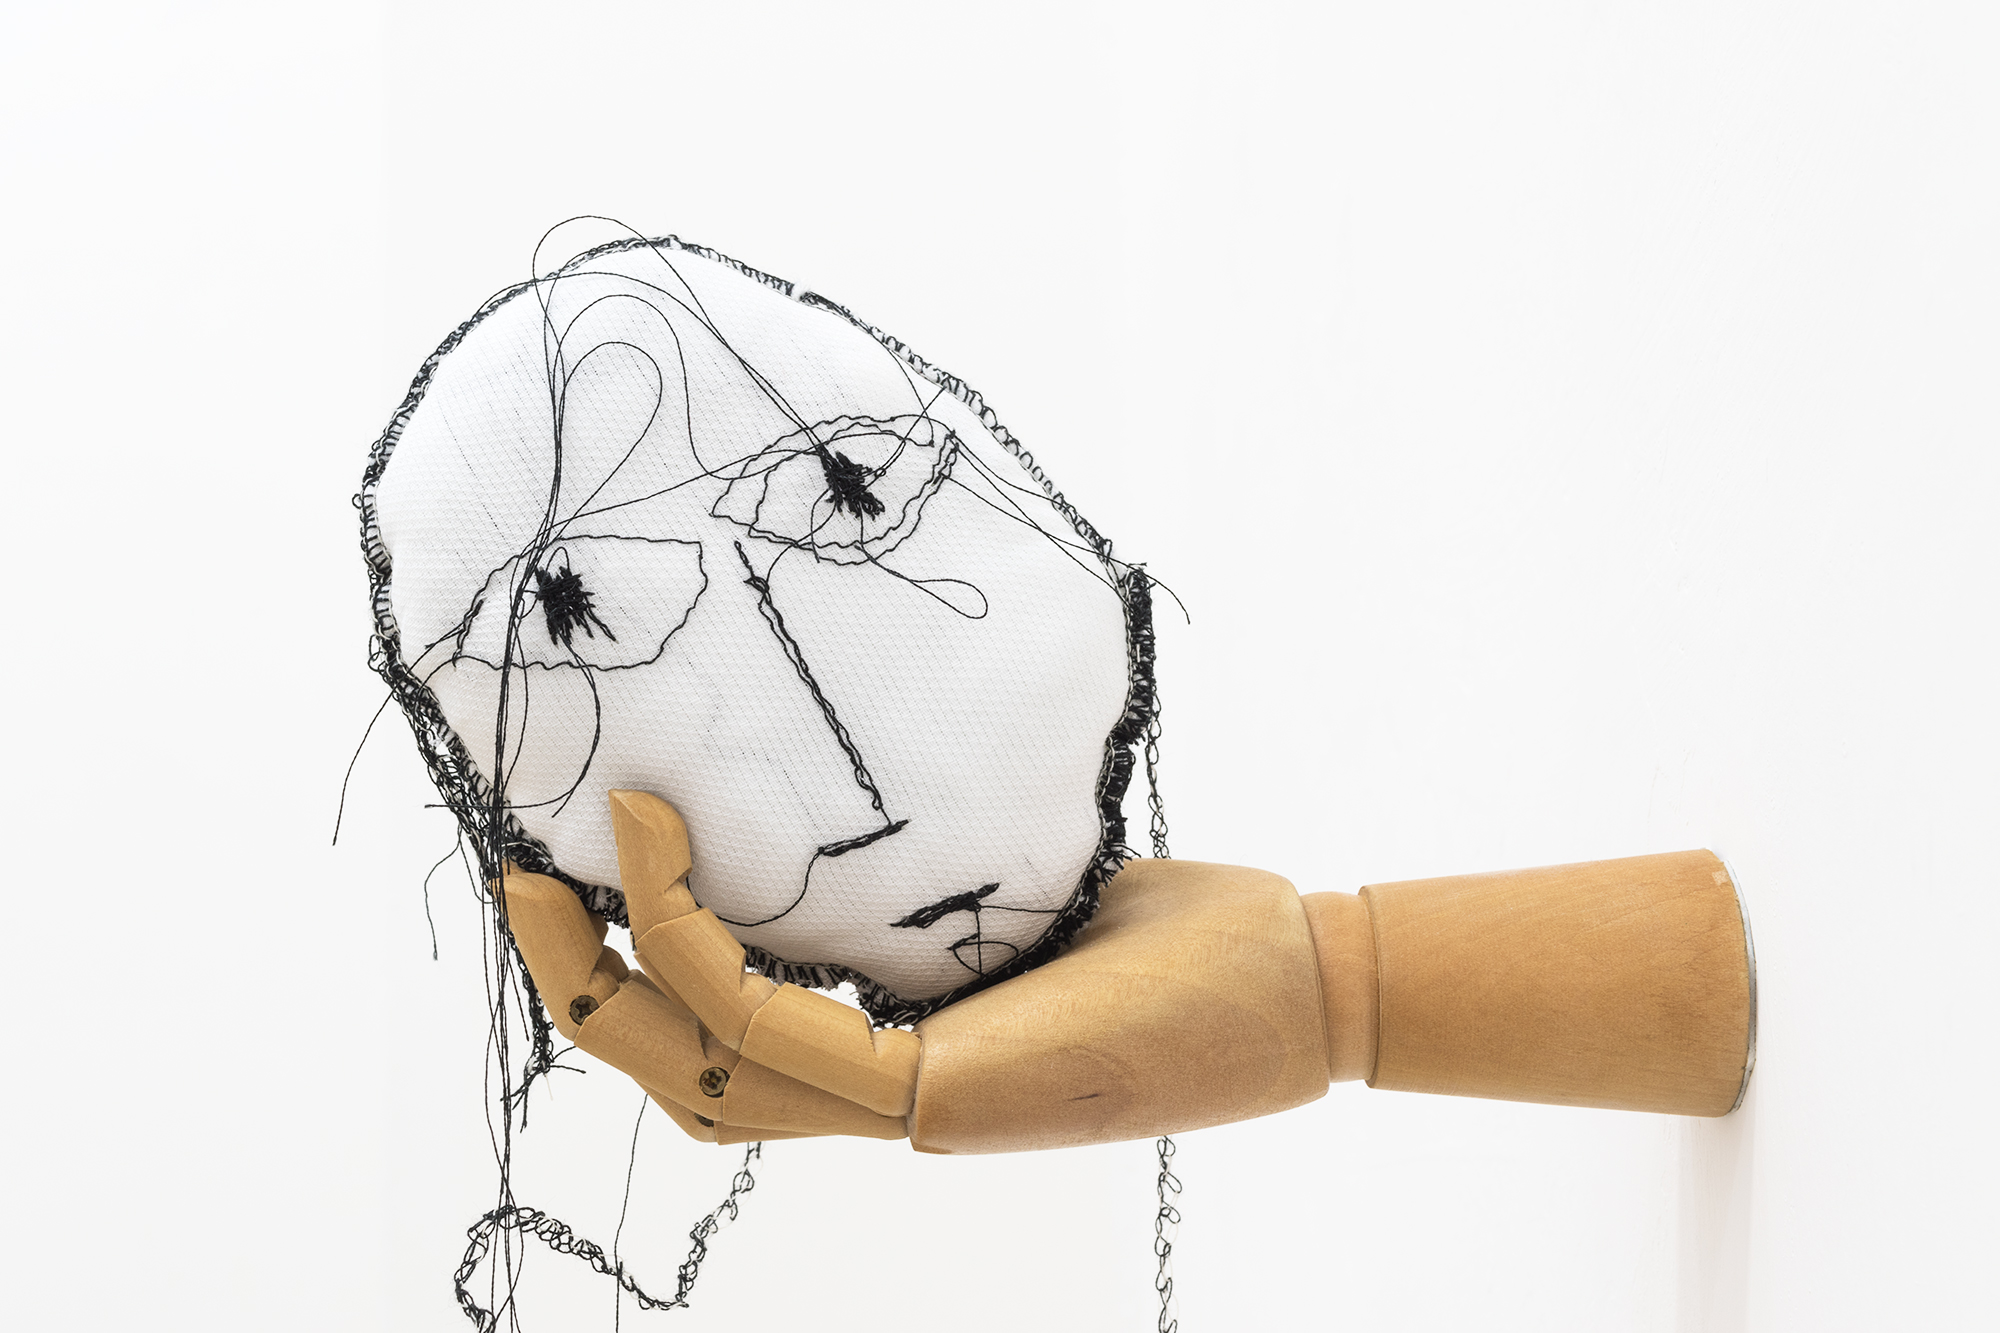 Mariantonietta Bagliato, Mannequeen, 2018, tessuto, imbottitura, manichino in legno a mano, ricamo, 15 x 12 x 24 cm.